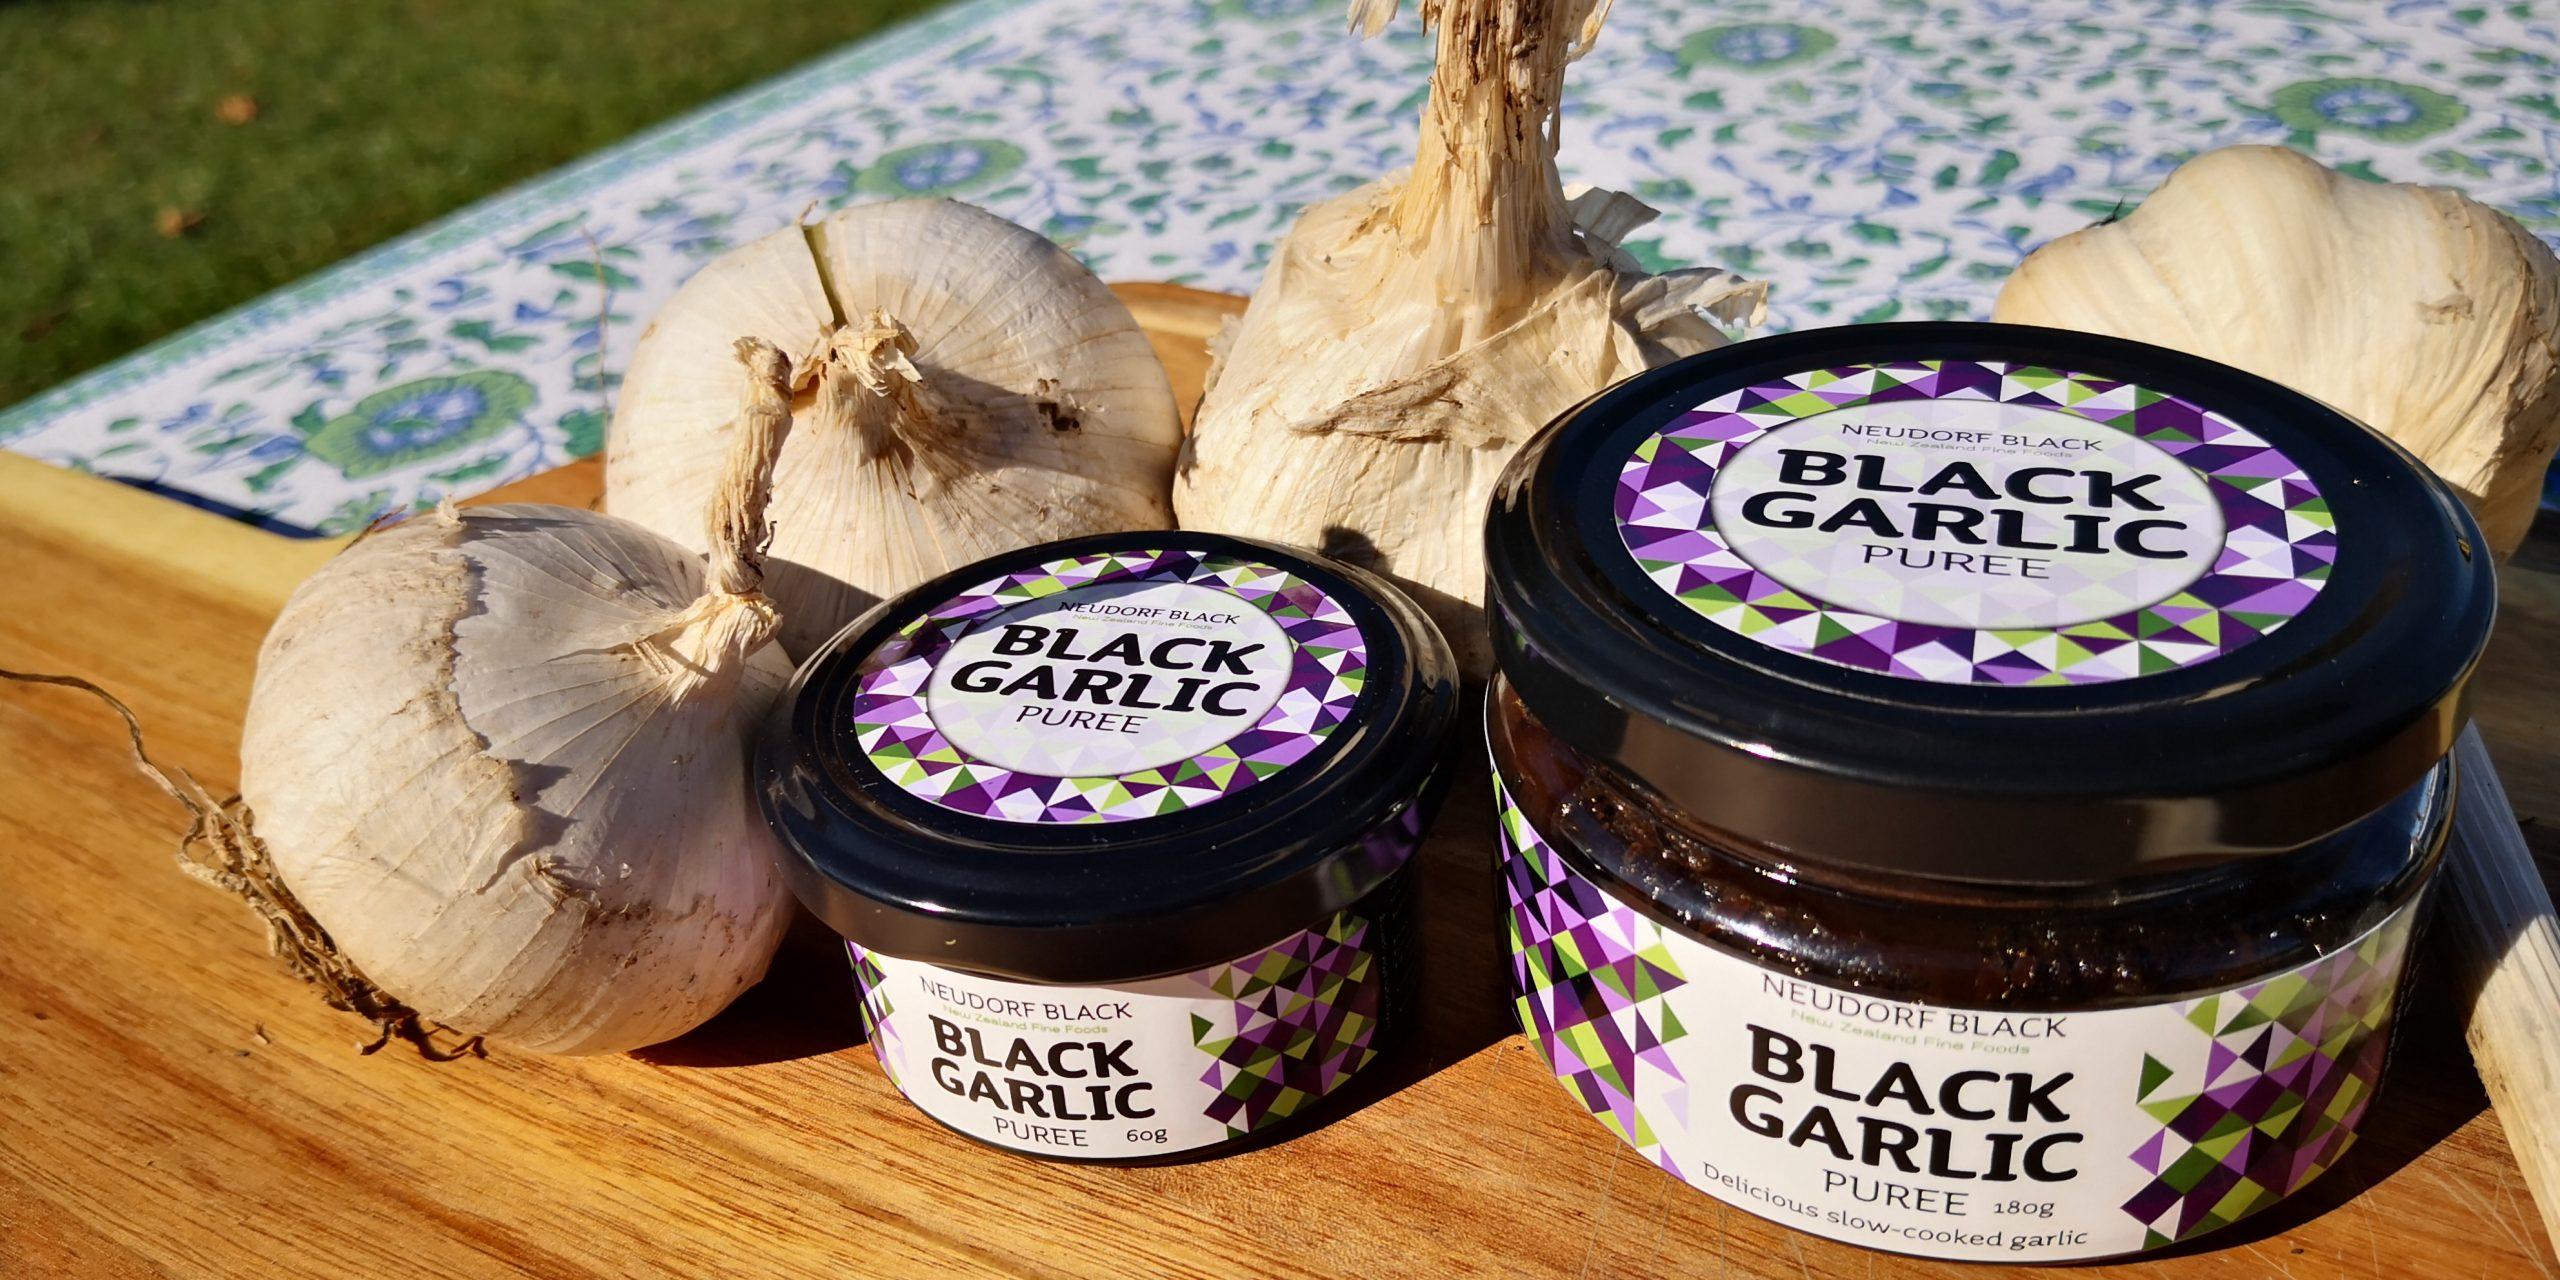 Neudorf Black – Black Garlic